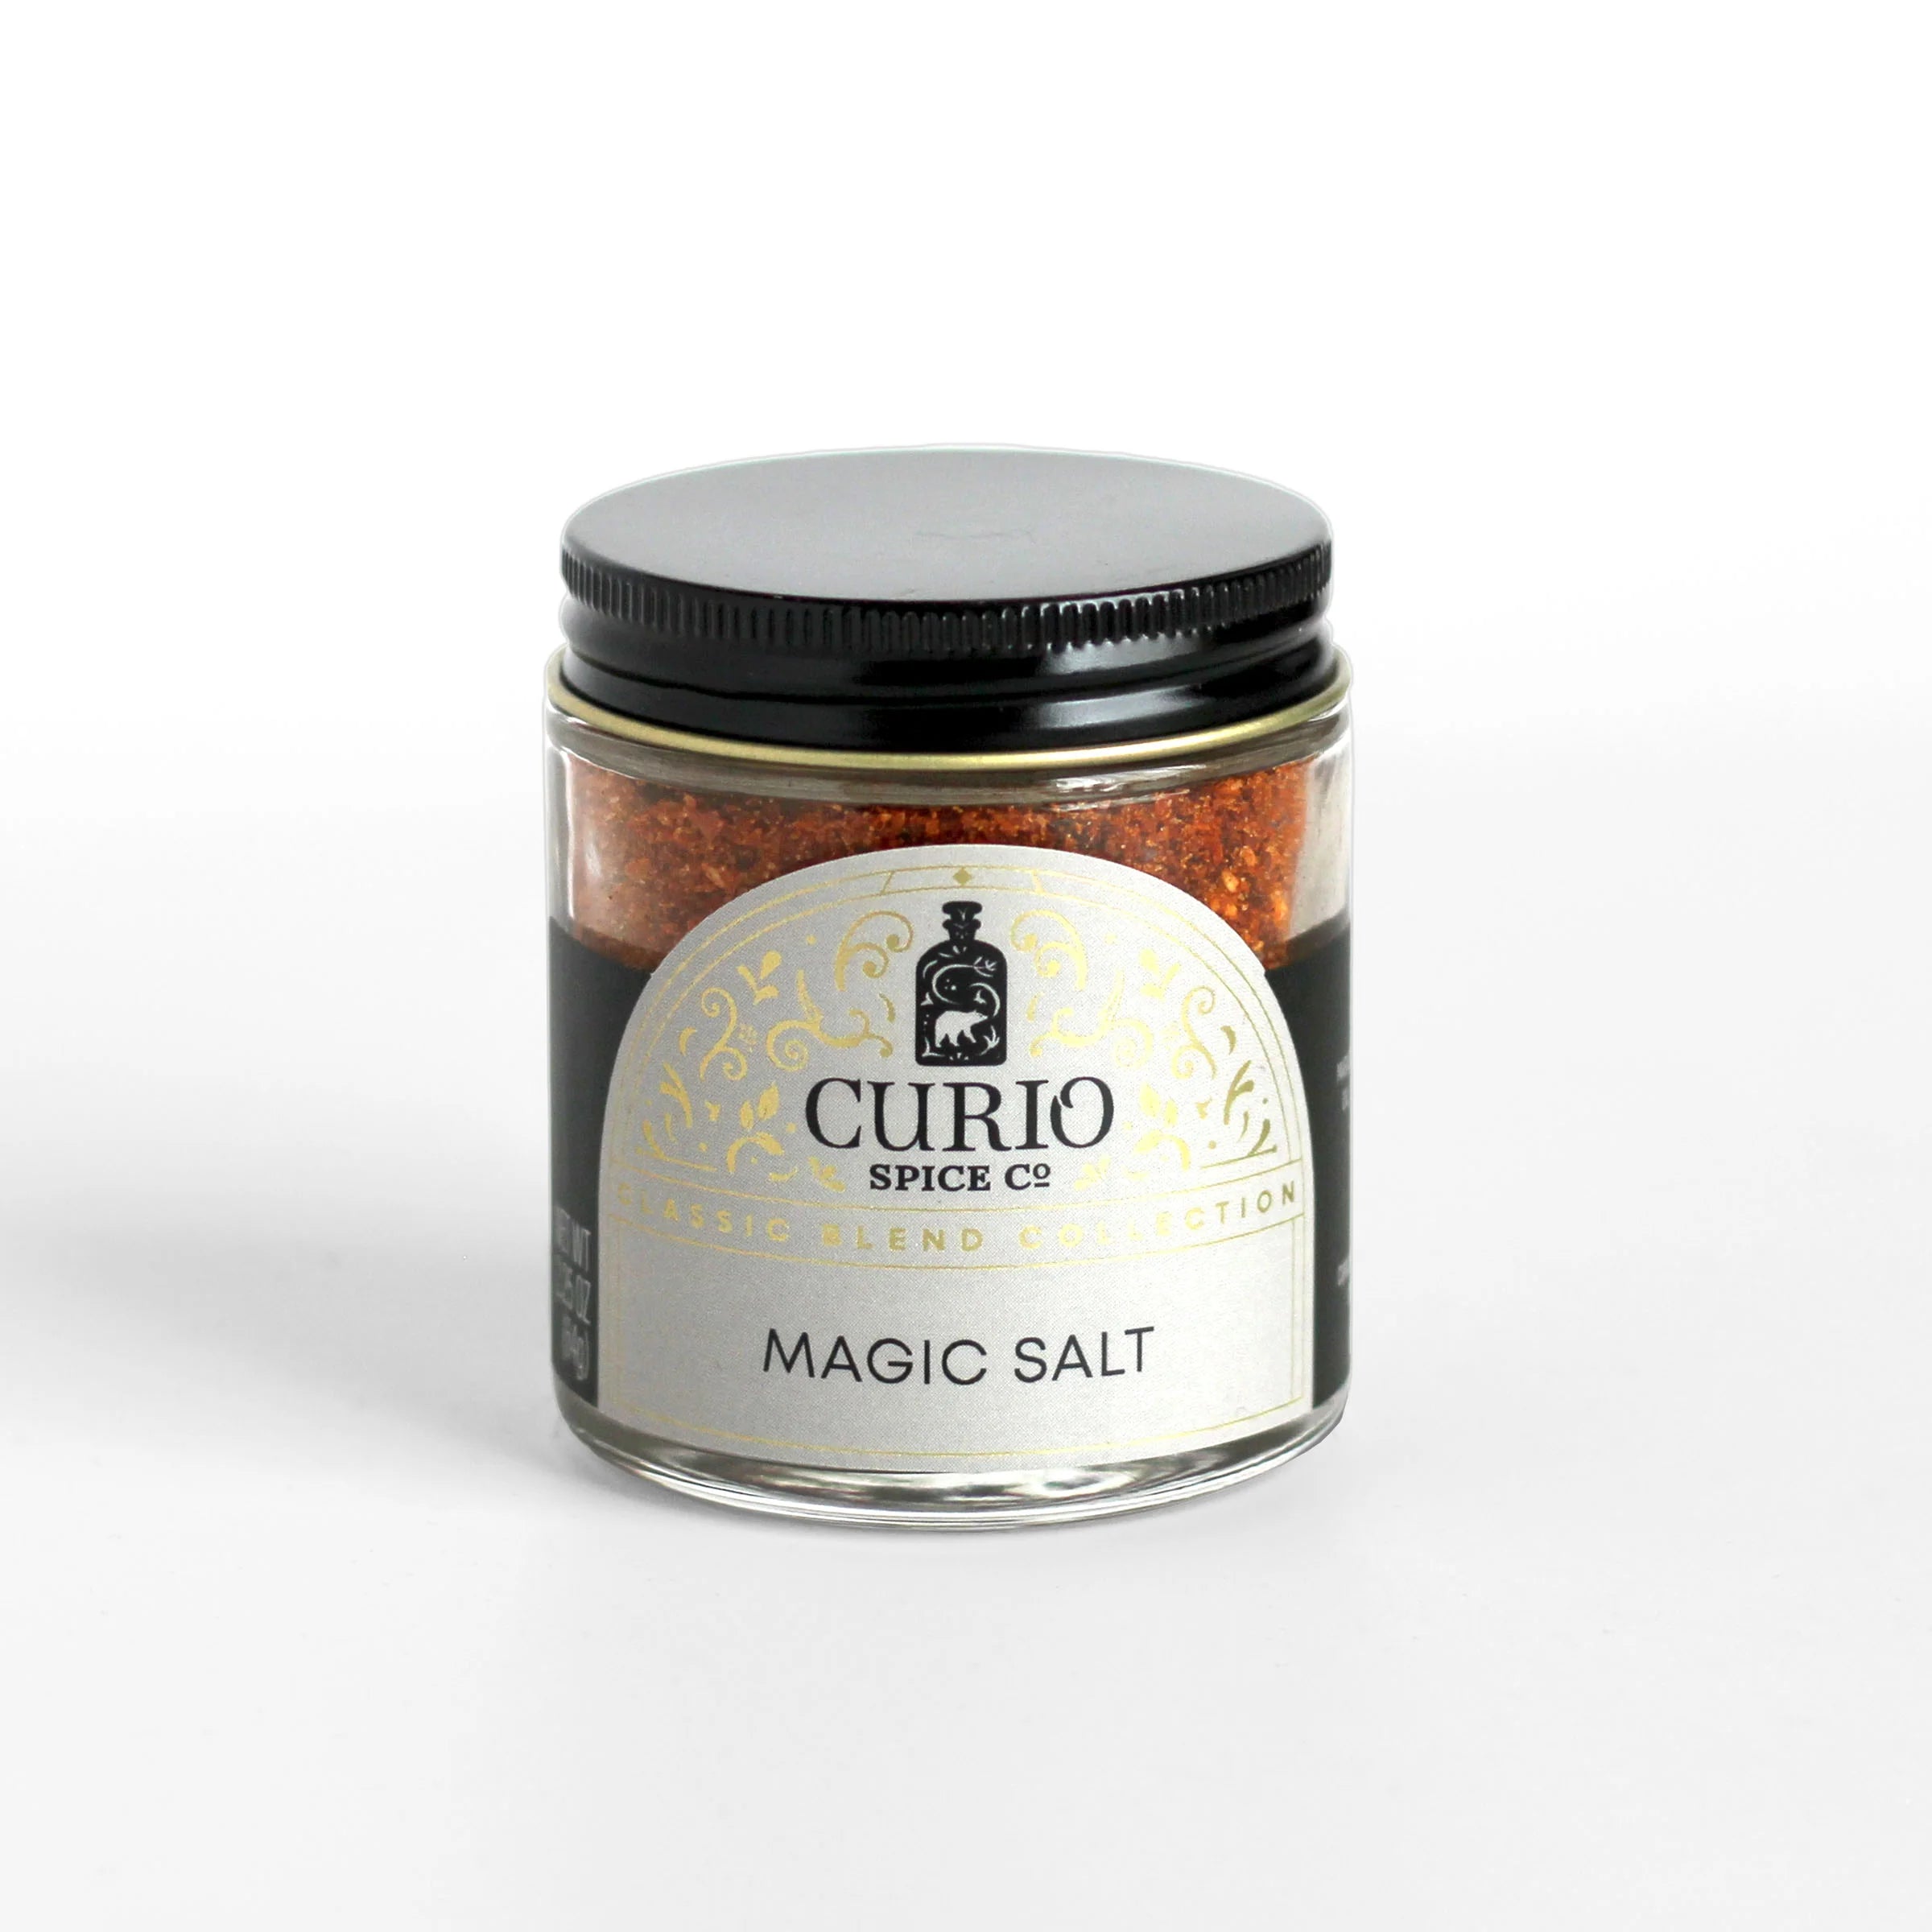 Curio Spice Co Magic Salt - Olive Oil Etcetera